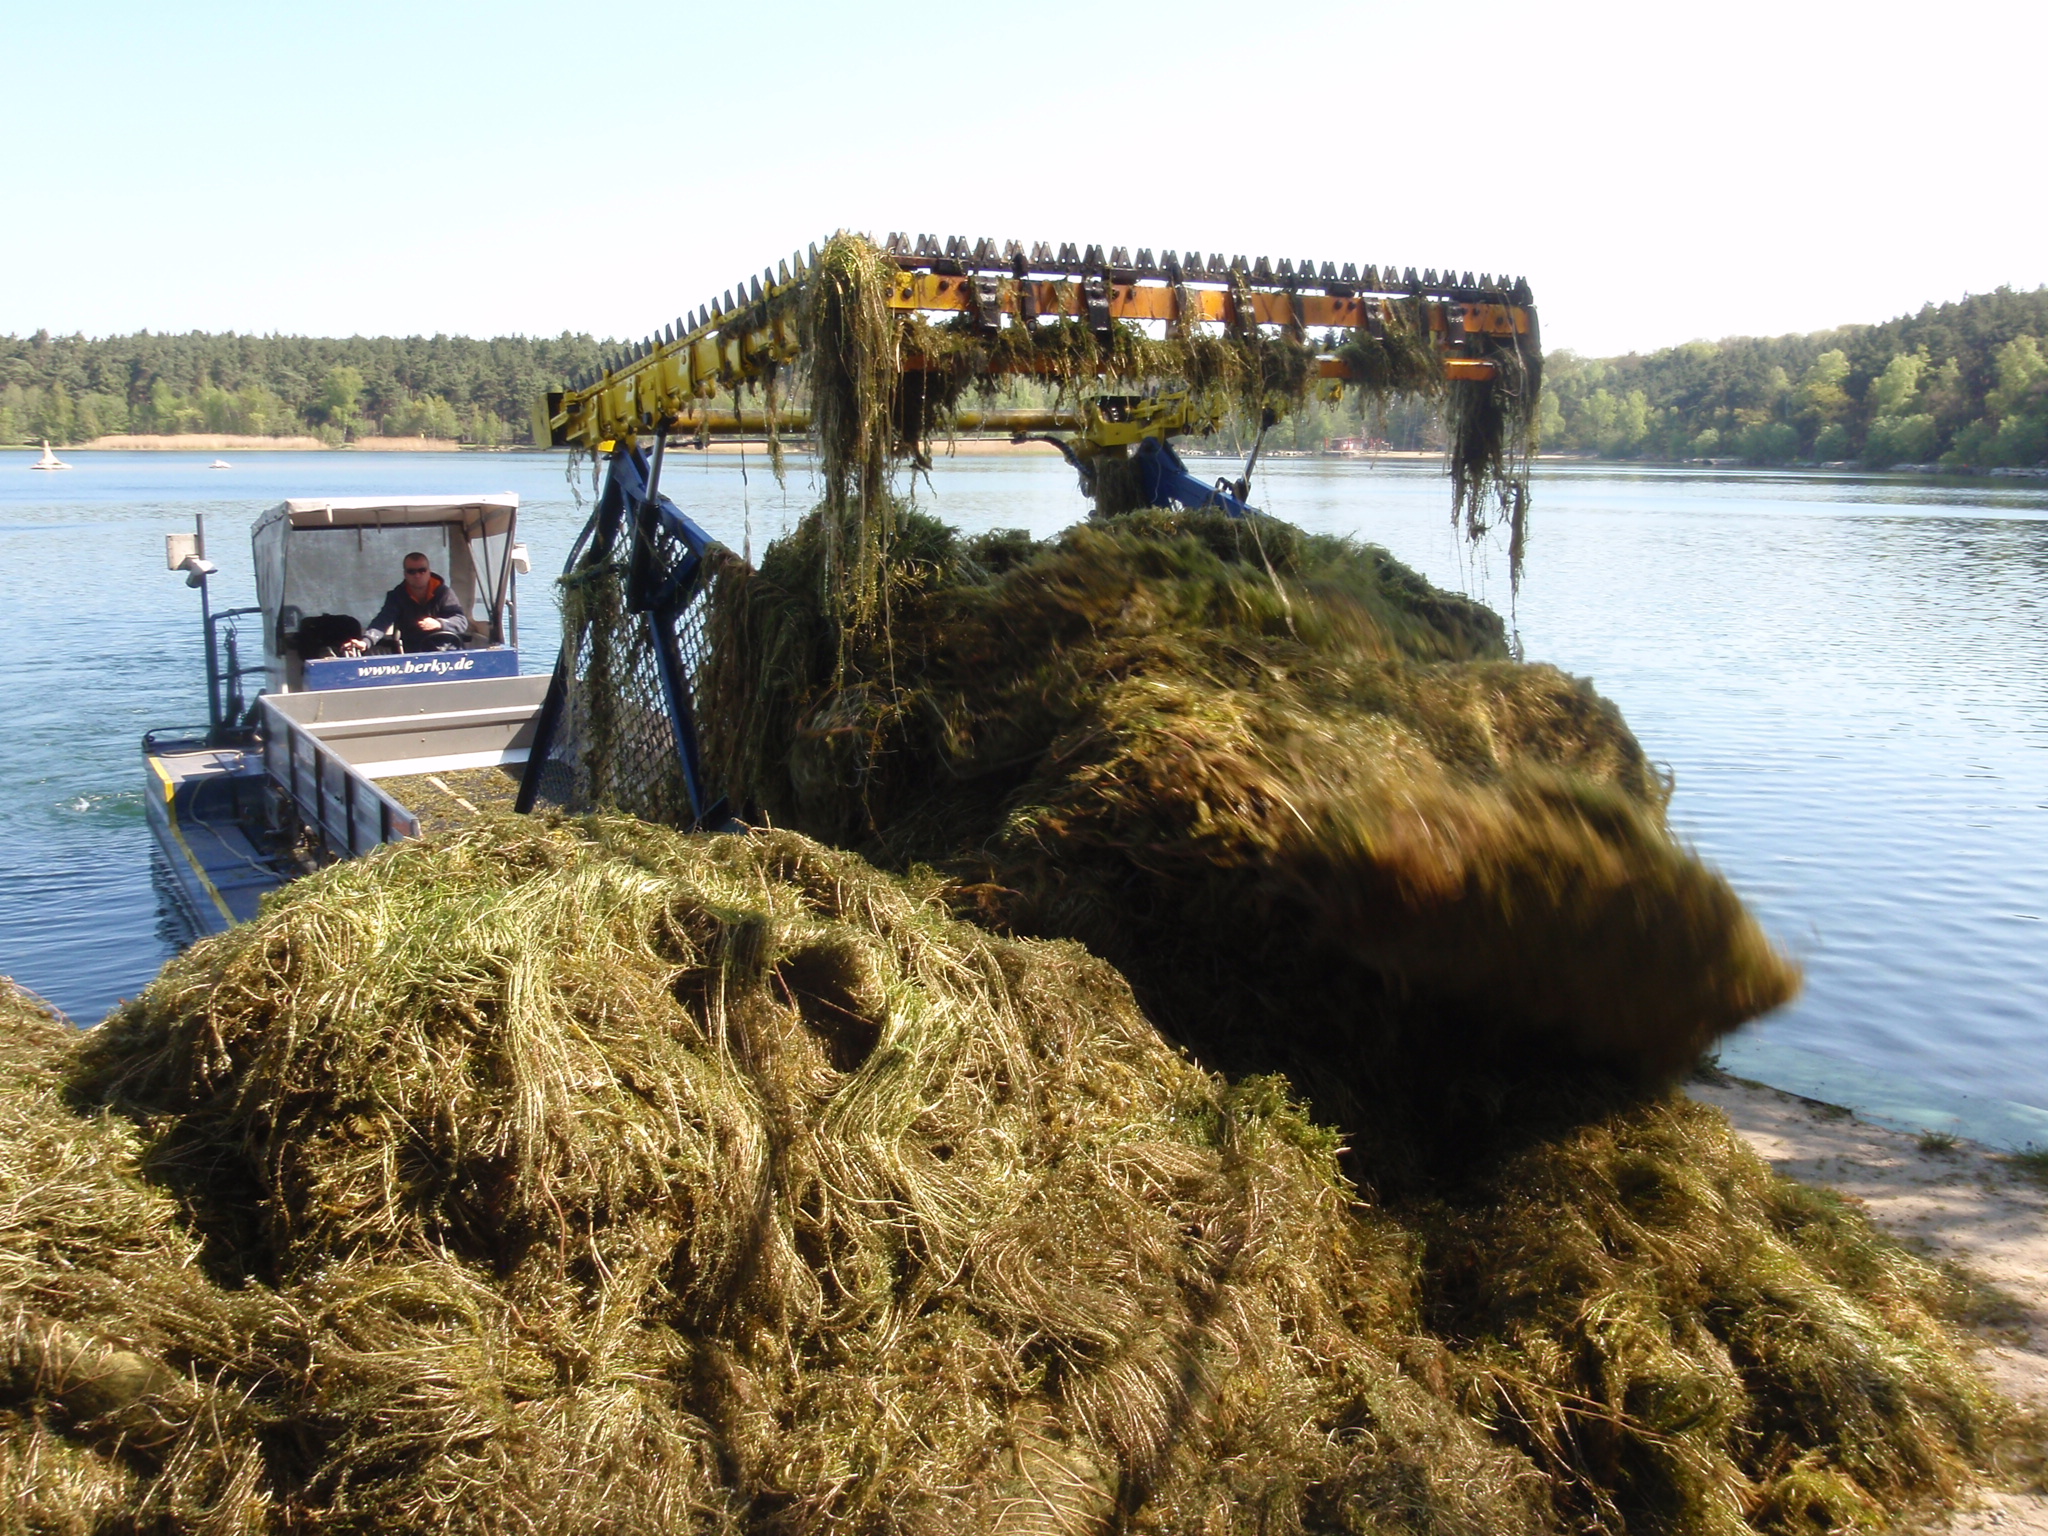 Vyžínací loď (harvester) vykládá nakosenou biomasu ponořené vegetace na břeh. Materiál je využíván jako hnojivo. Foto Jindřich Duras